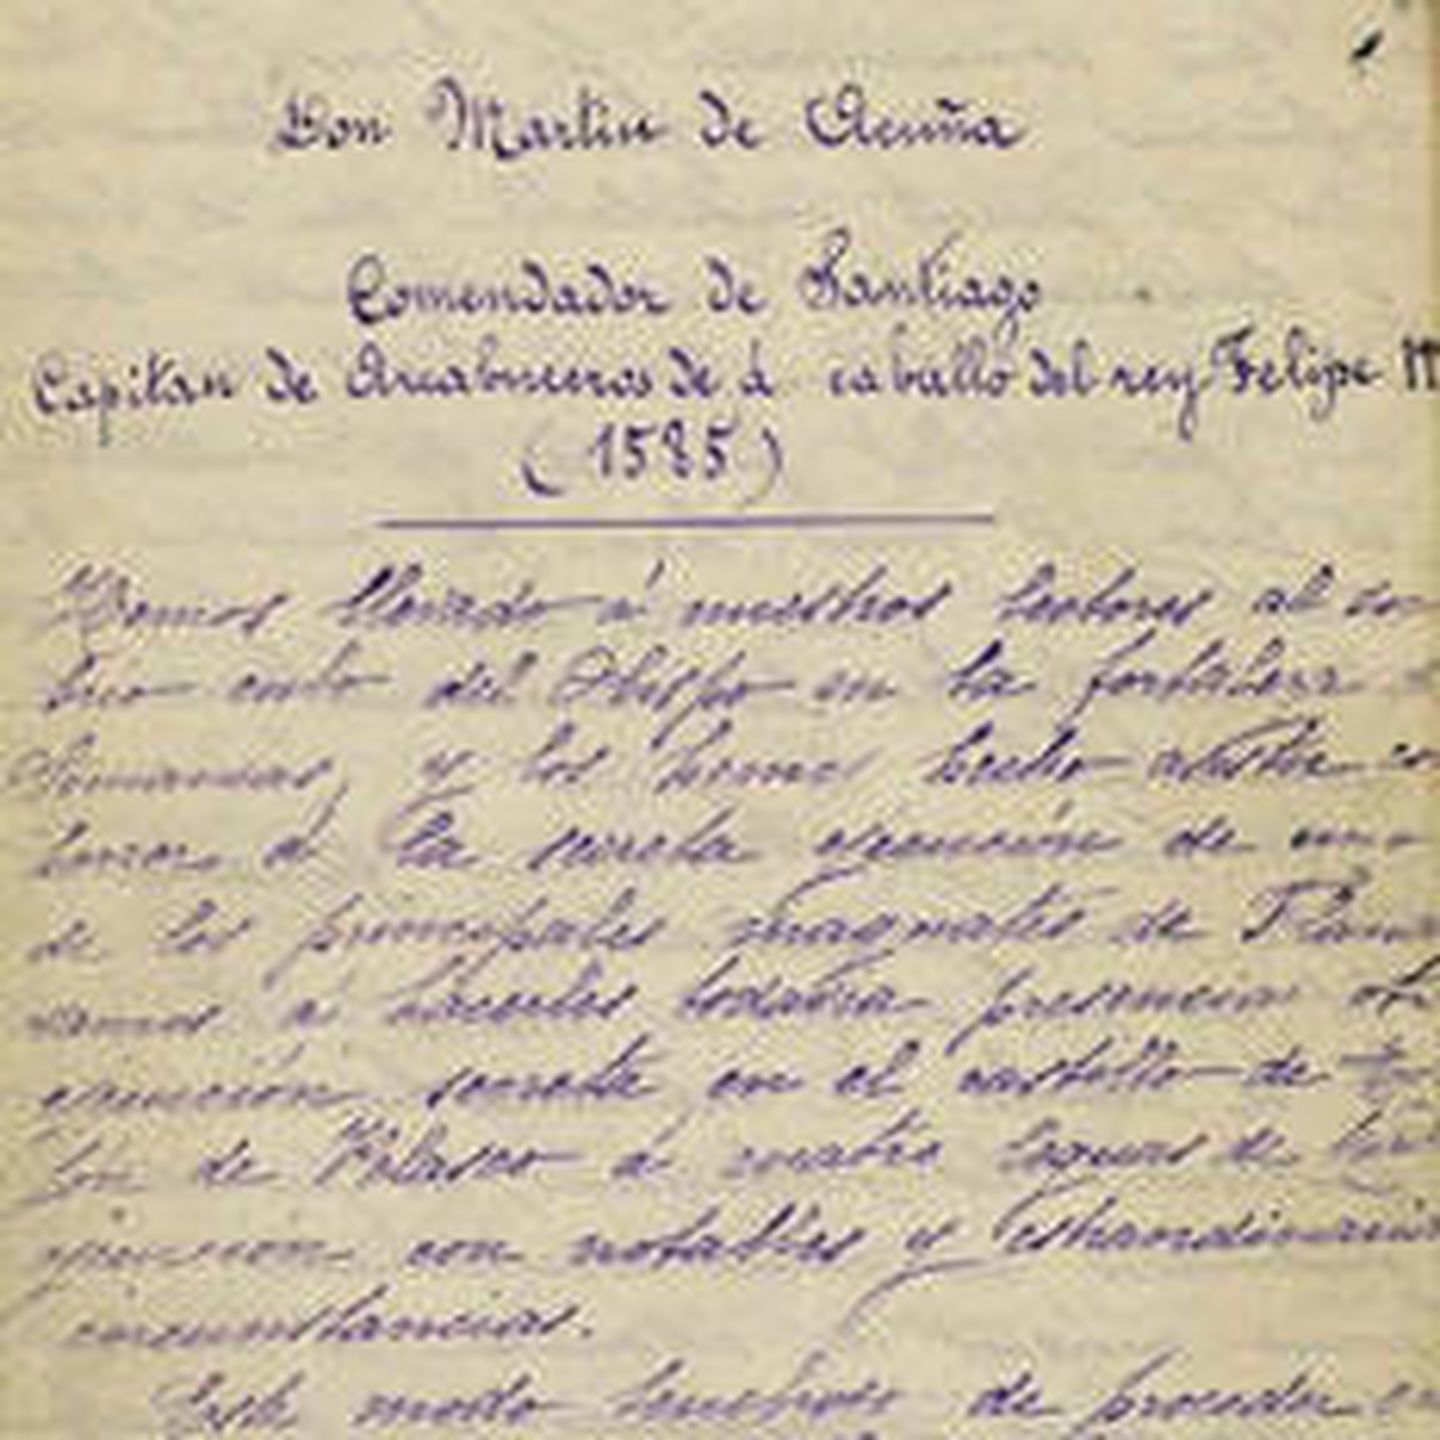 Una de las cartas dirigidas a Martín de Acuña.